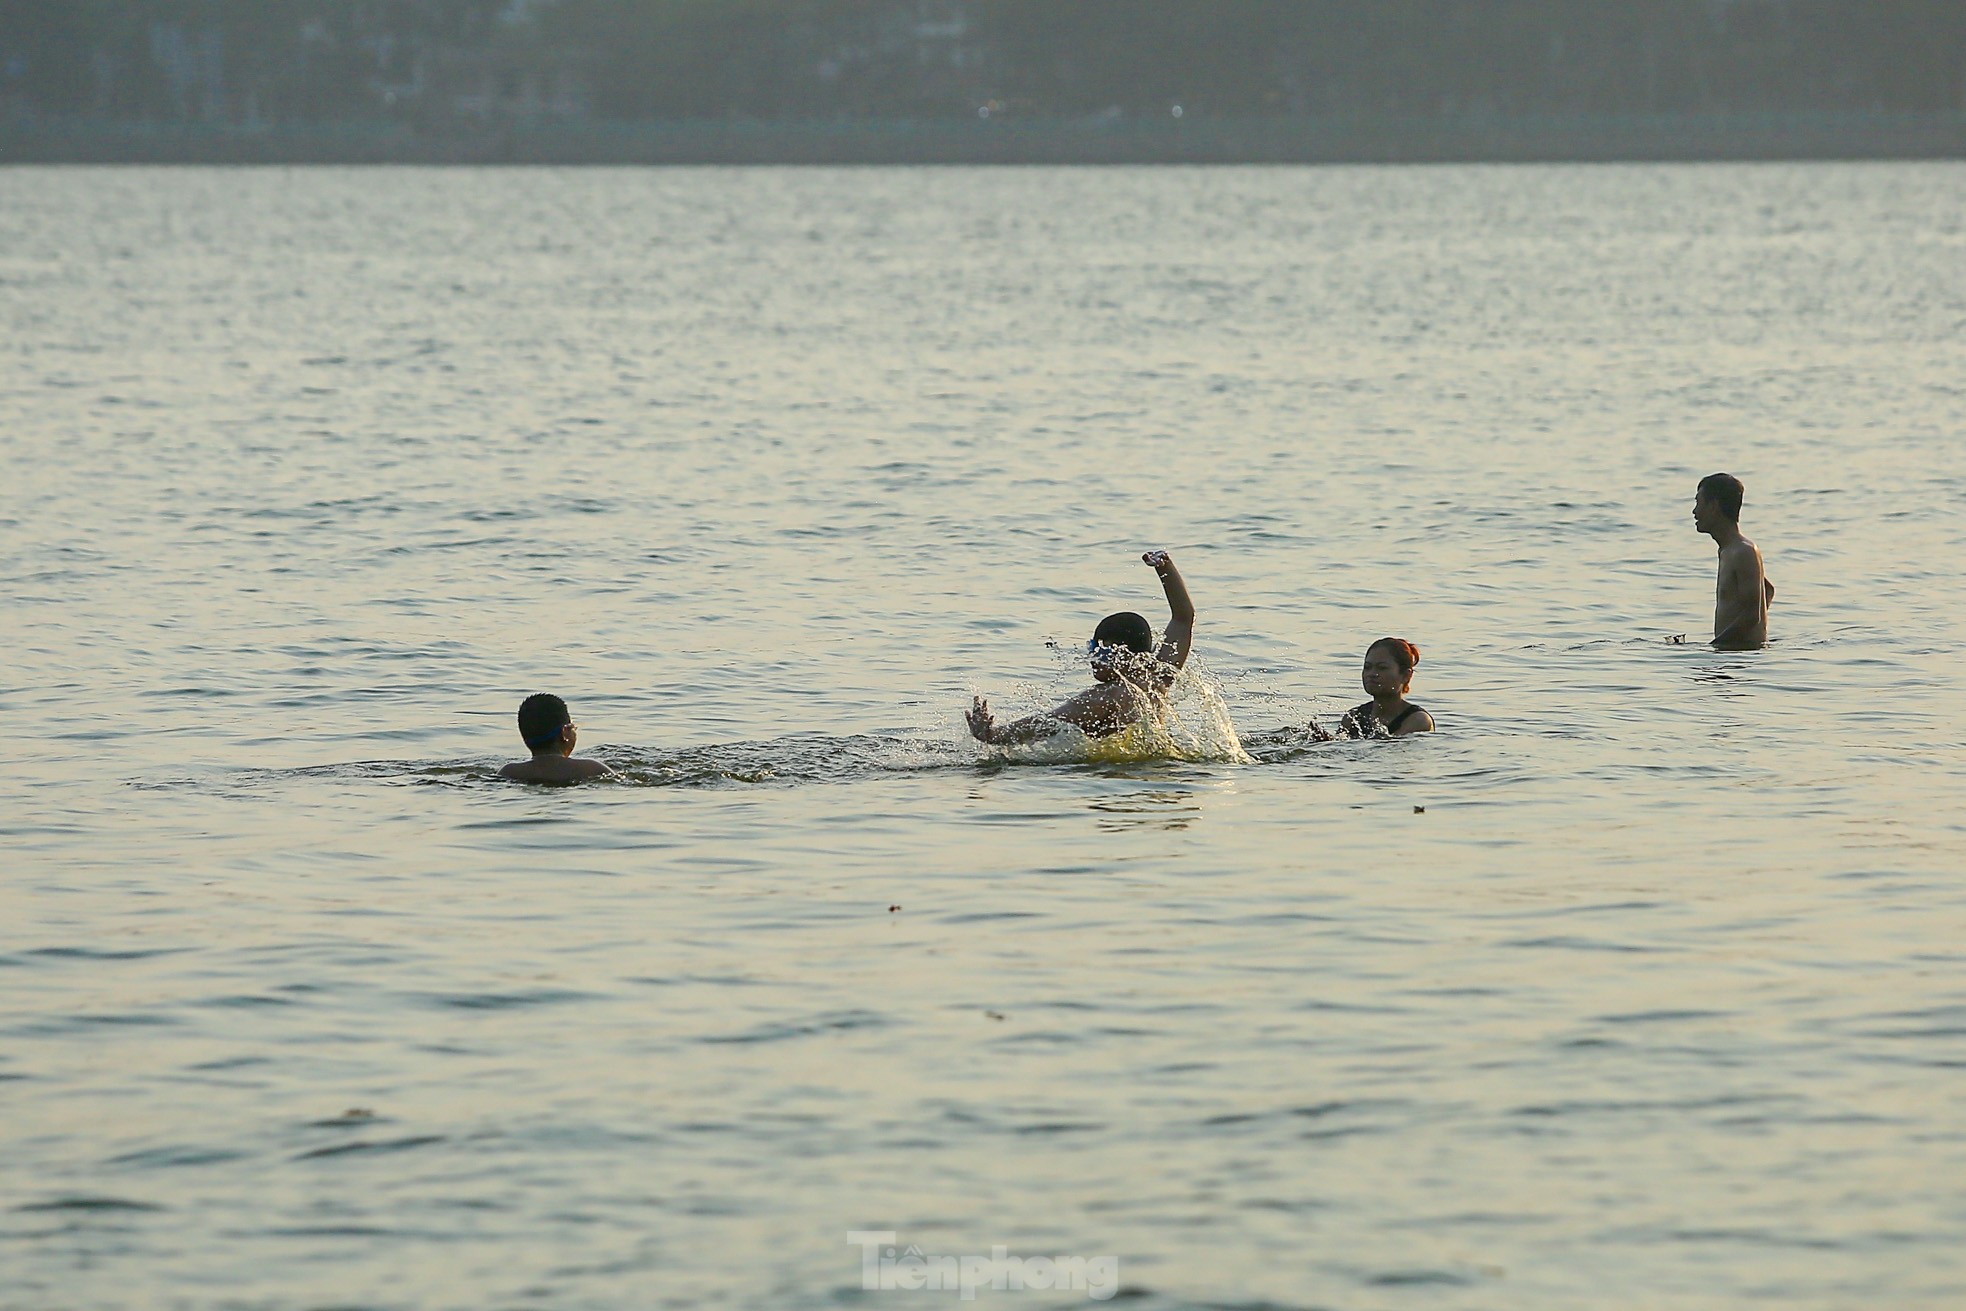 Nắng nóng oi bức, người Hà Nội 'biến' hồ Tây thành bể bơi giải nhiệt bất chấp lệnh cấm - Ảnh 7.